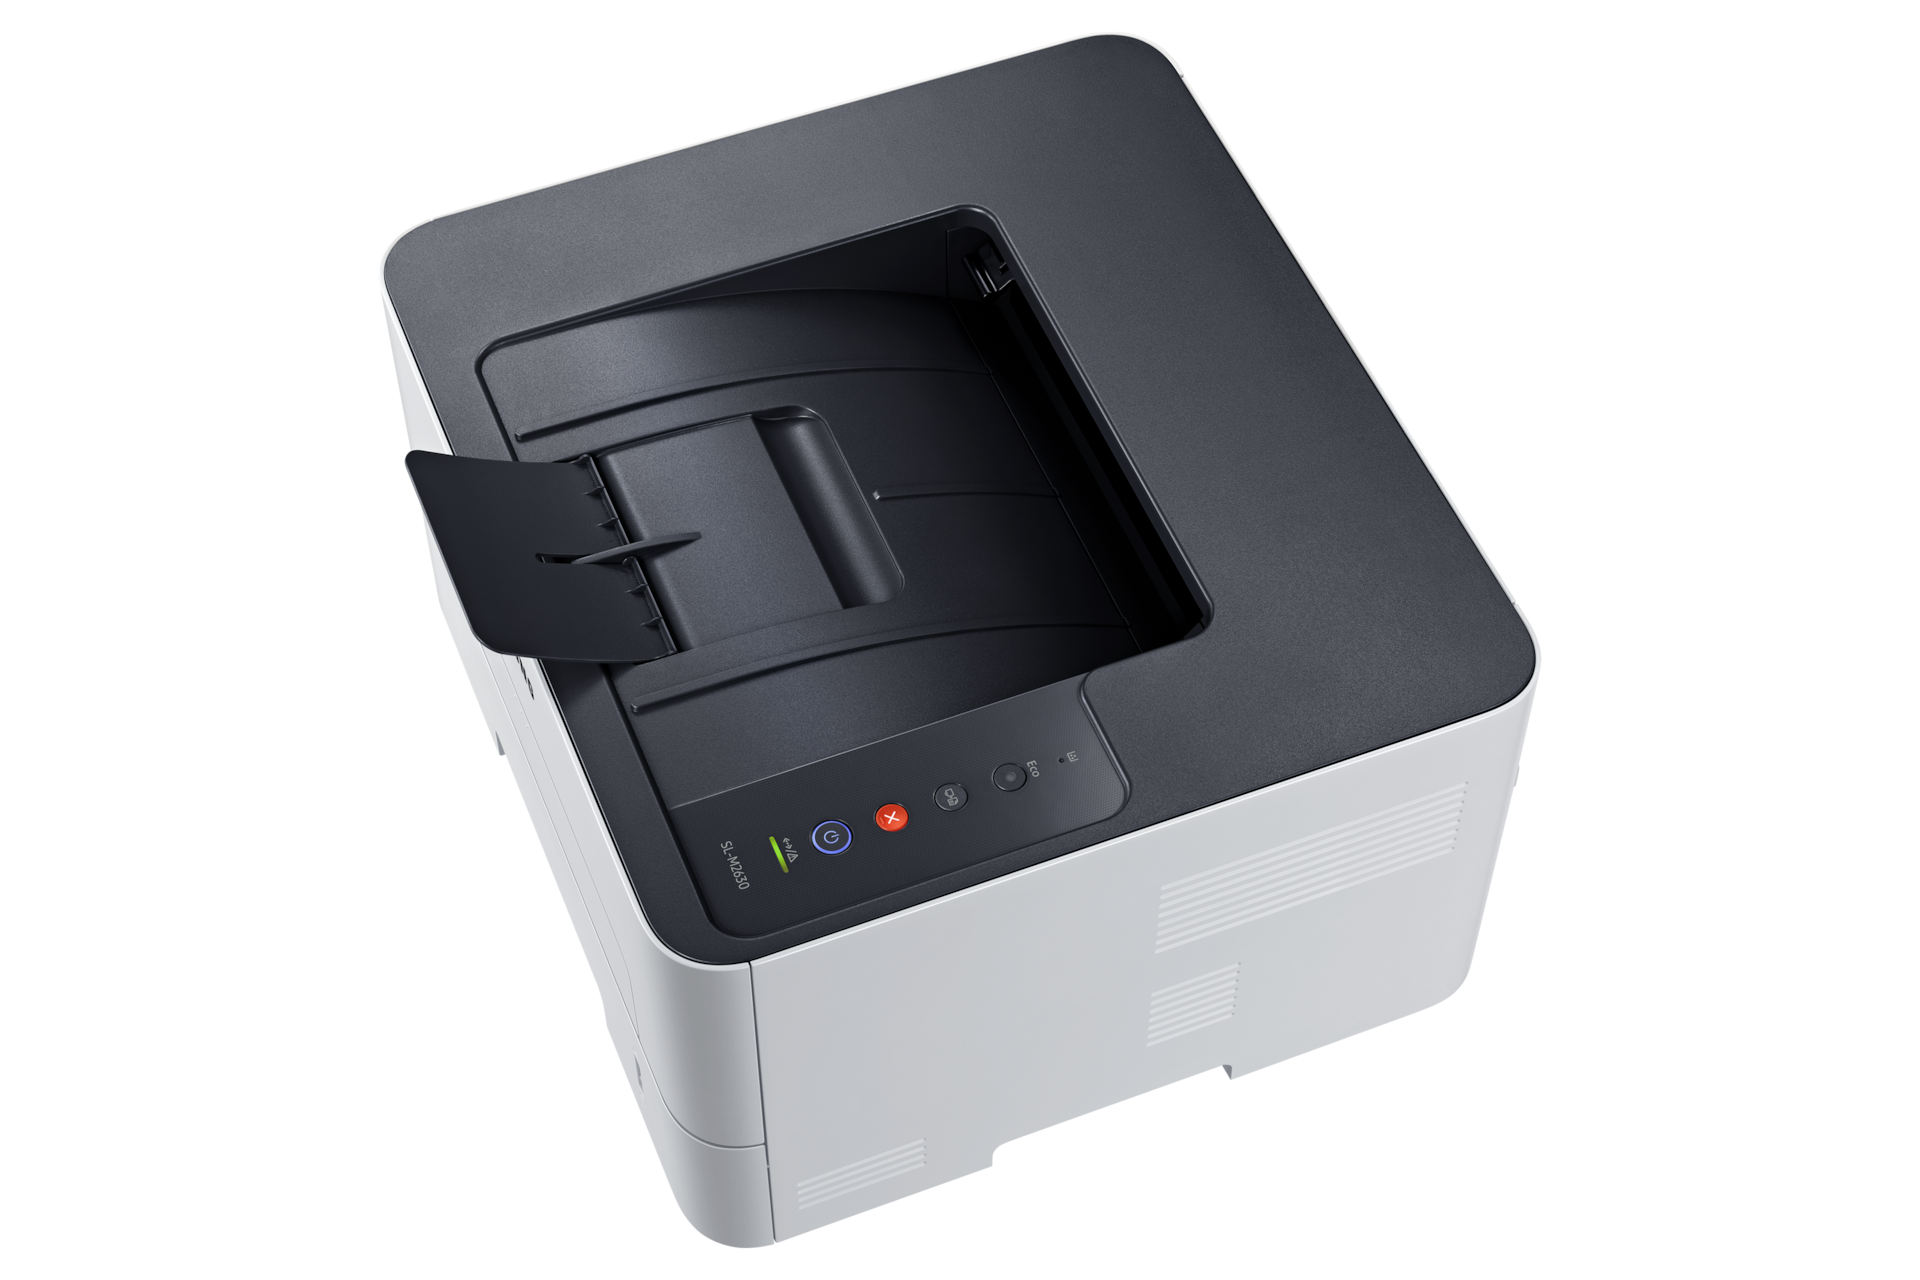 흑백 레이저 프린터 26 ppm 그레이 제품 탑 뷰 용지 방지턱 열린 이미지